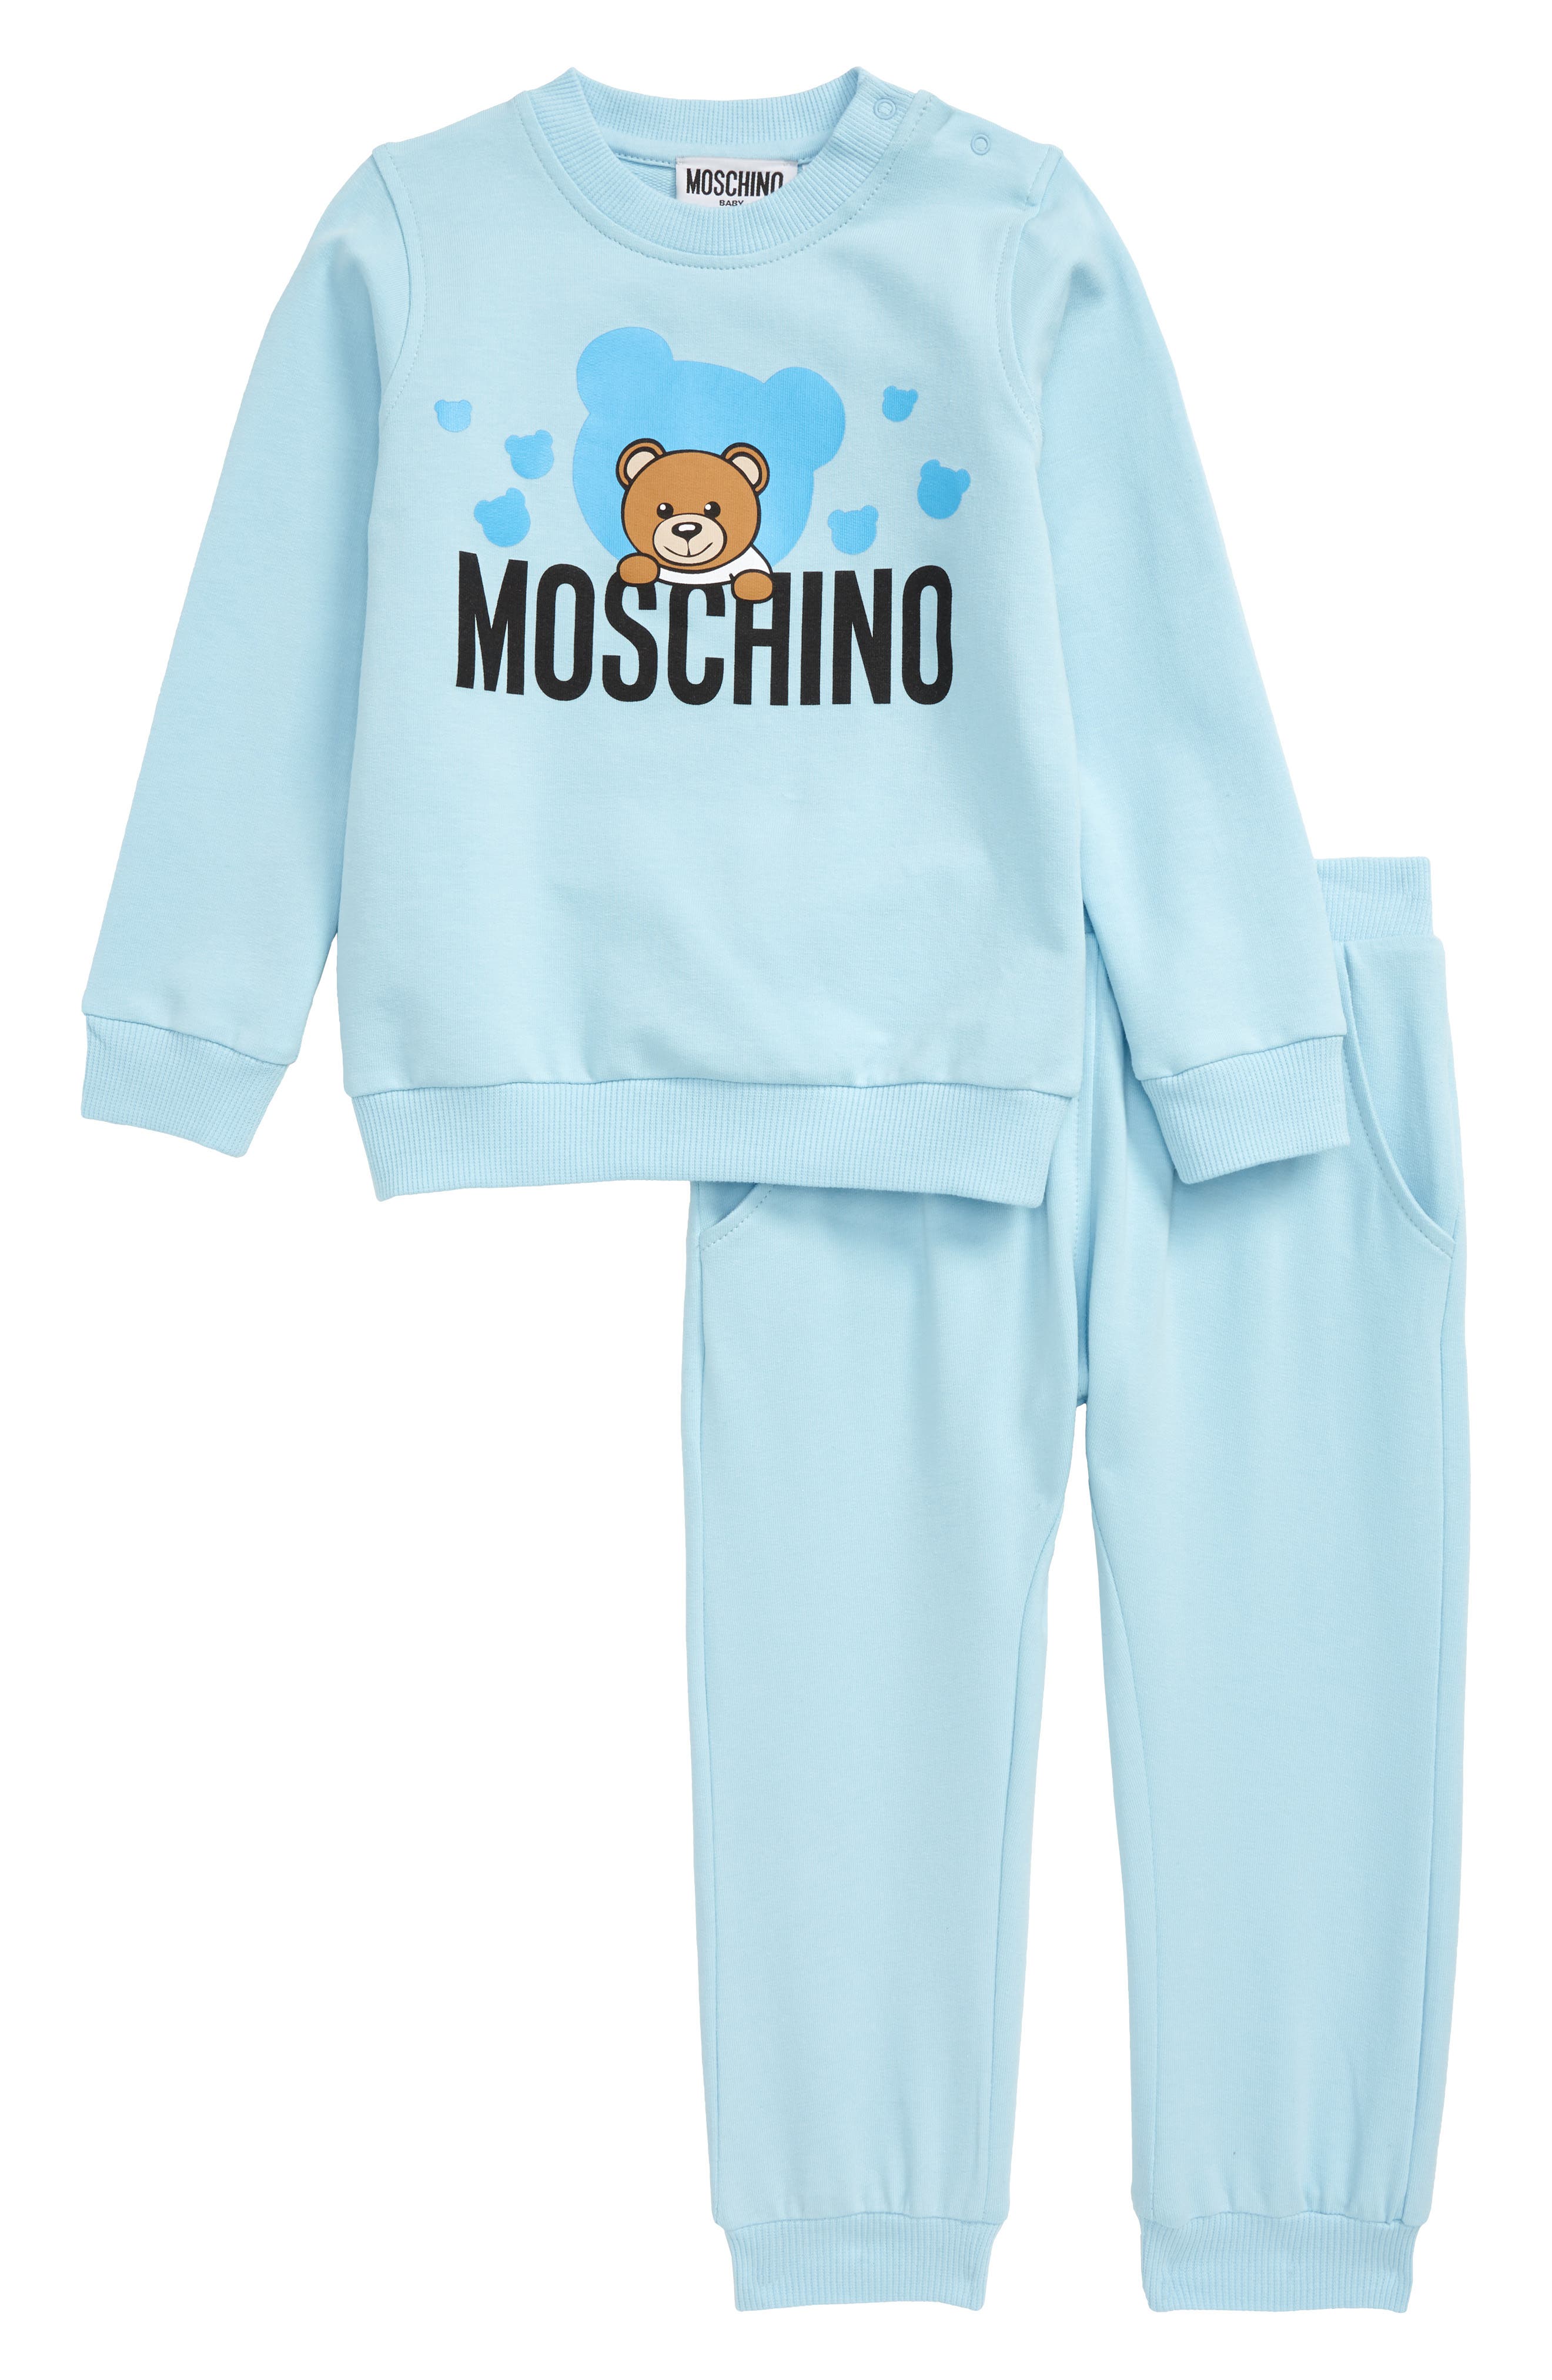 moschino nightwear